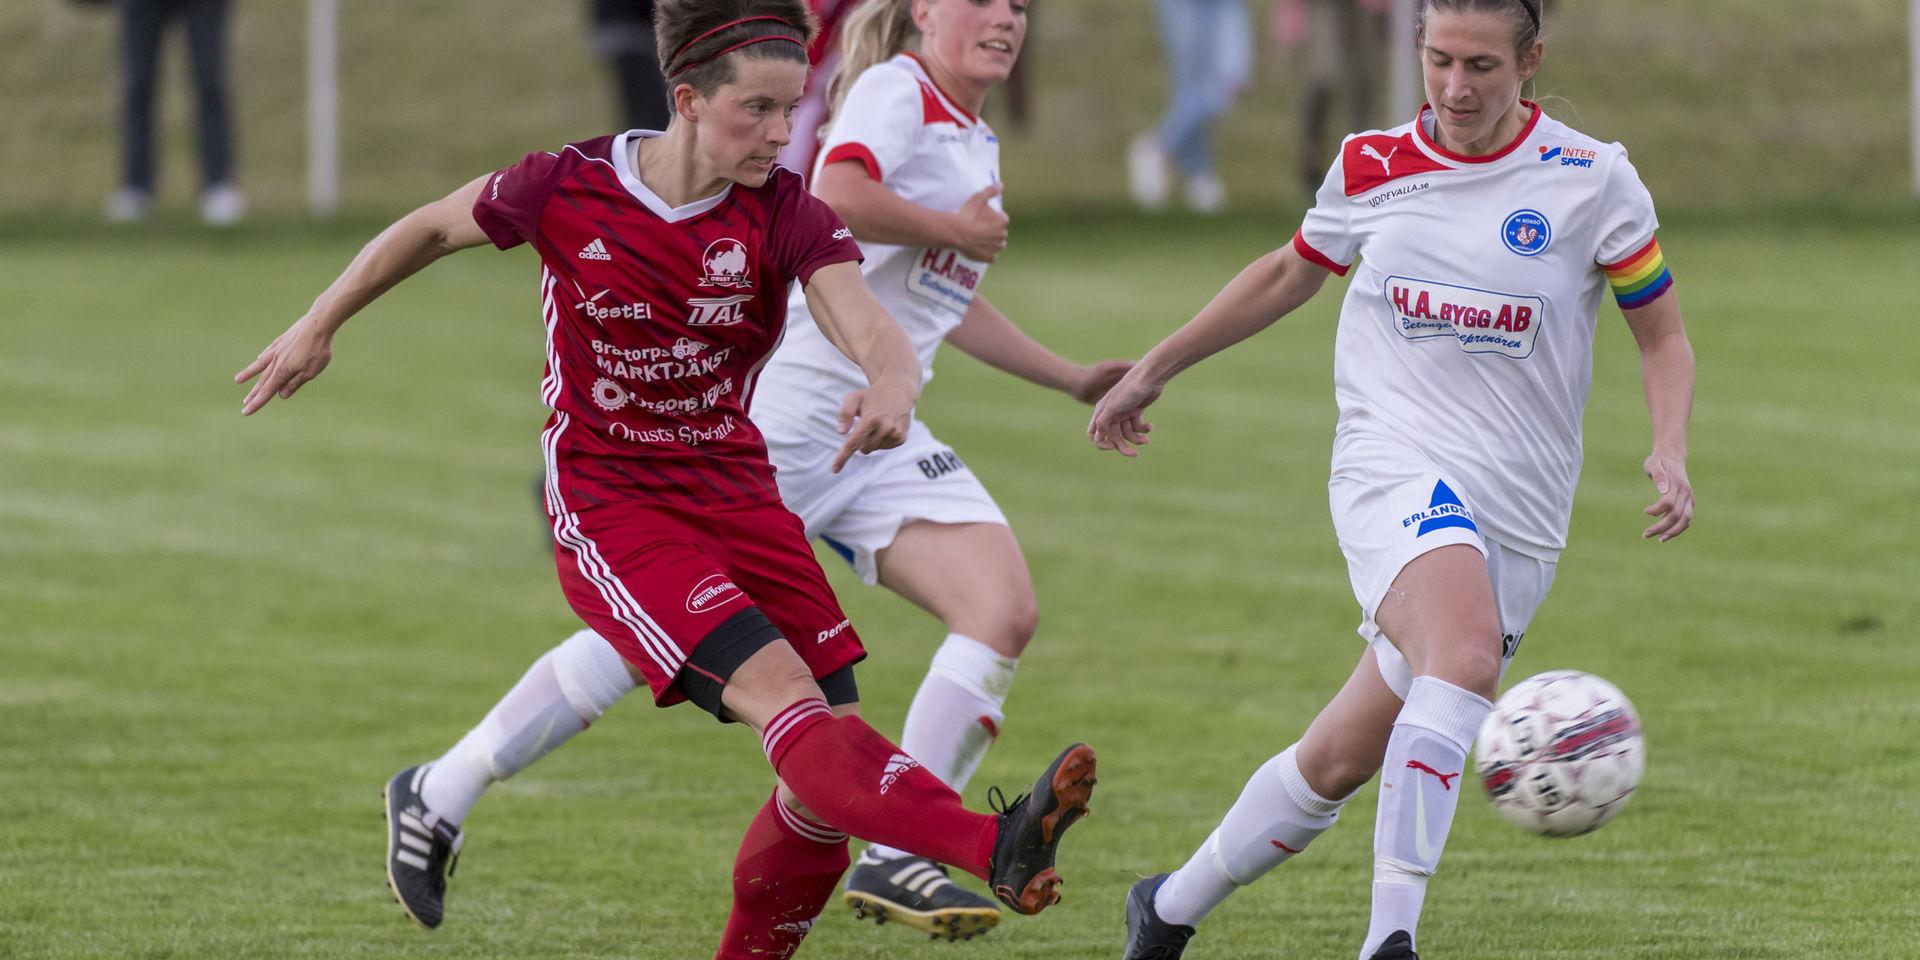 Vårens derby mellan Orust och Rössö slutade 0–0. På lördag möts Karin From och Malin Skoglund igen